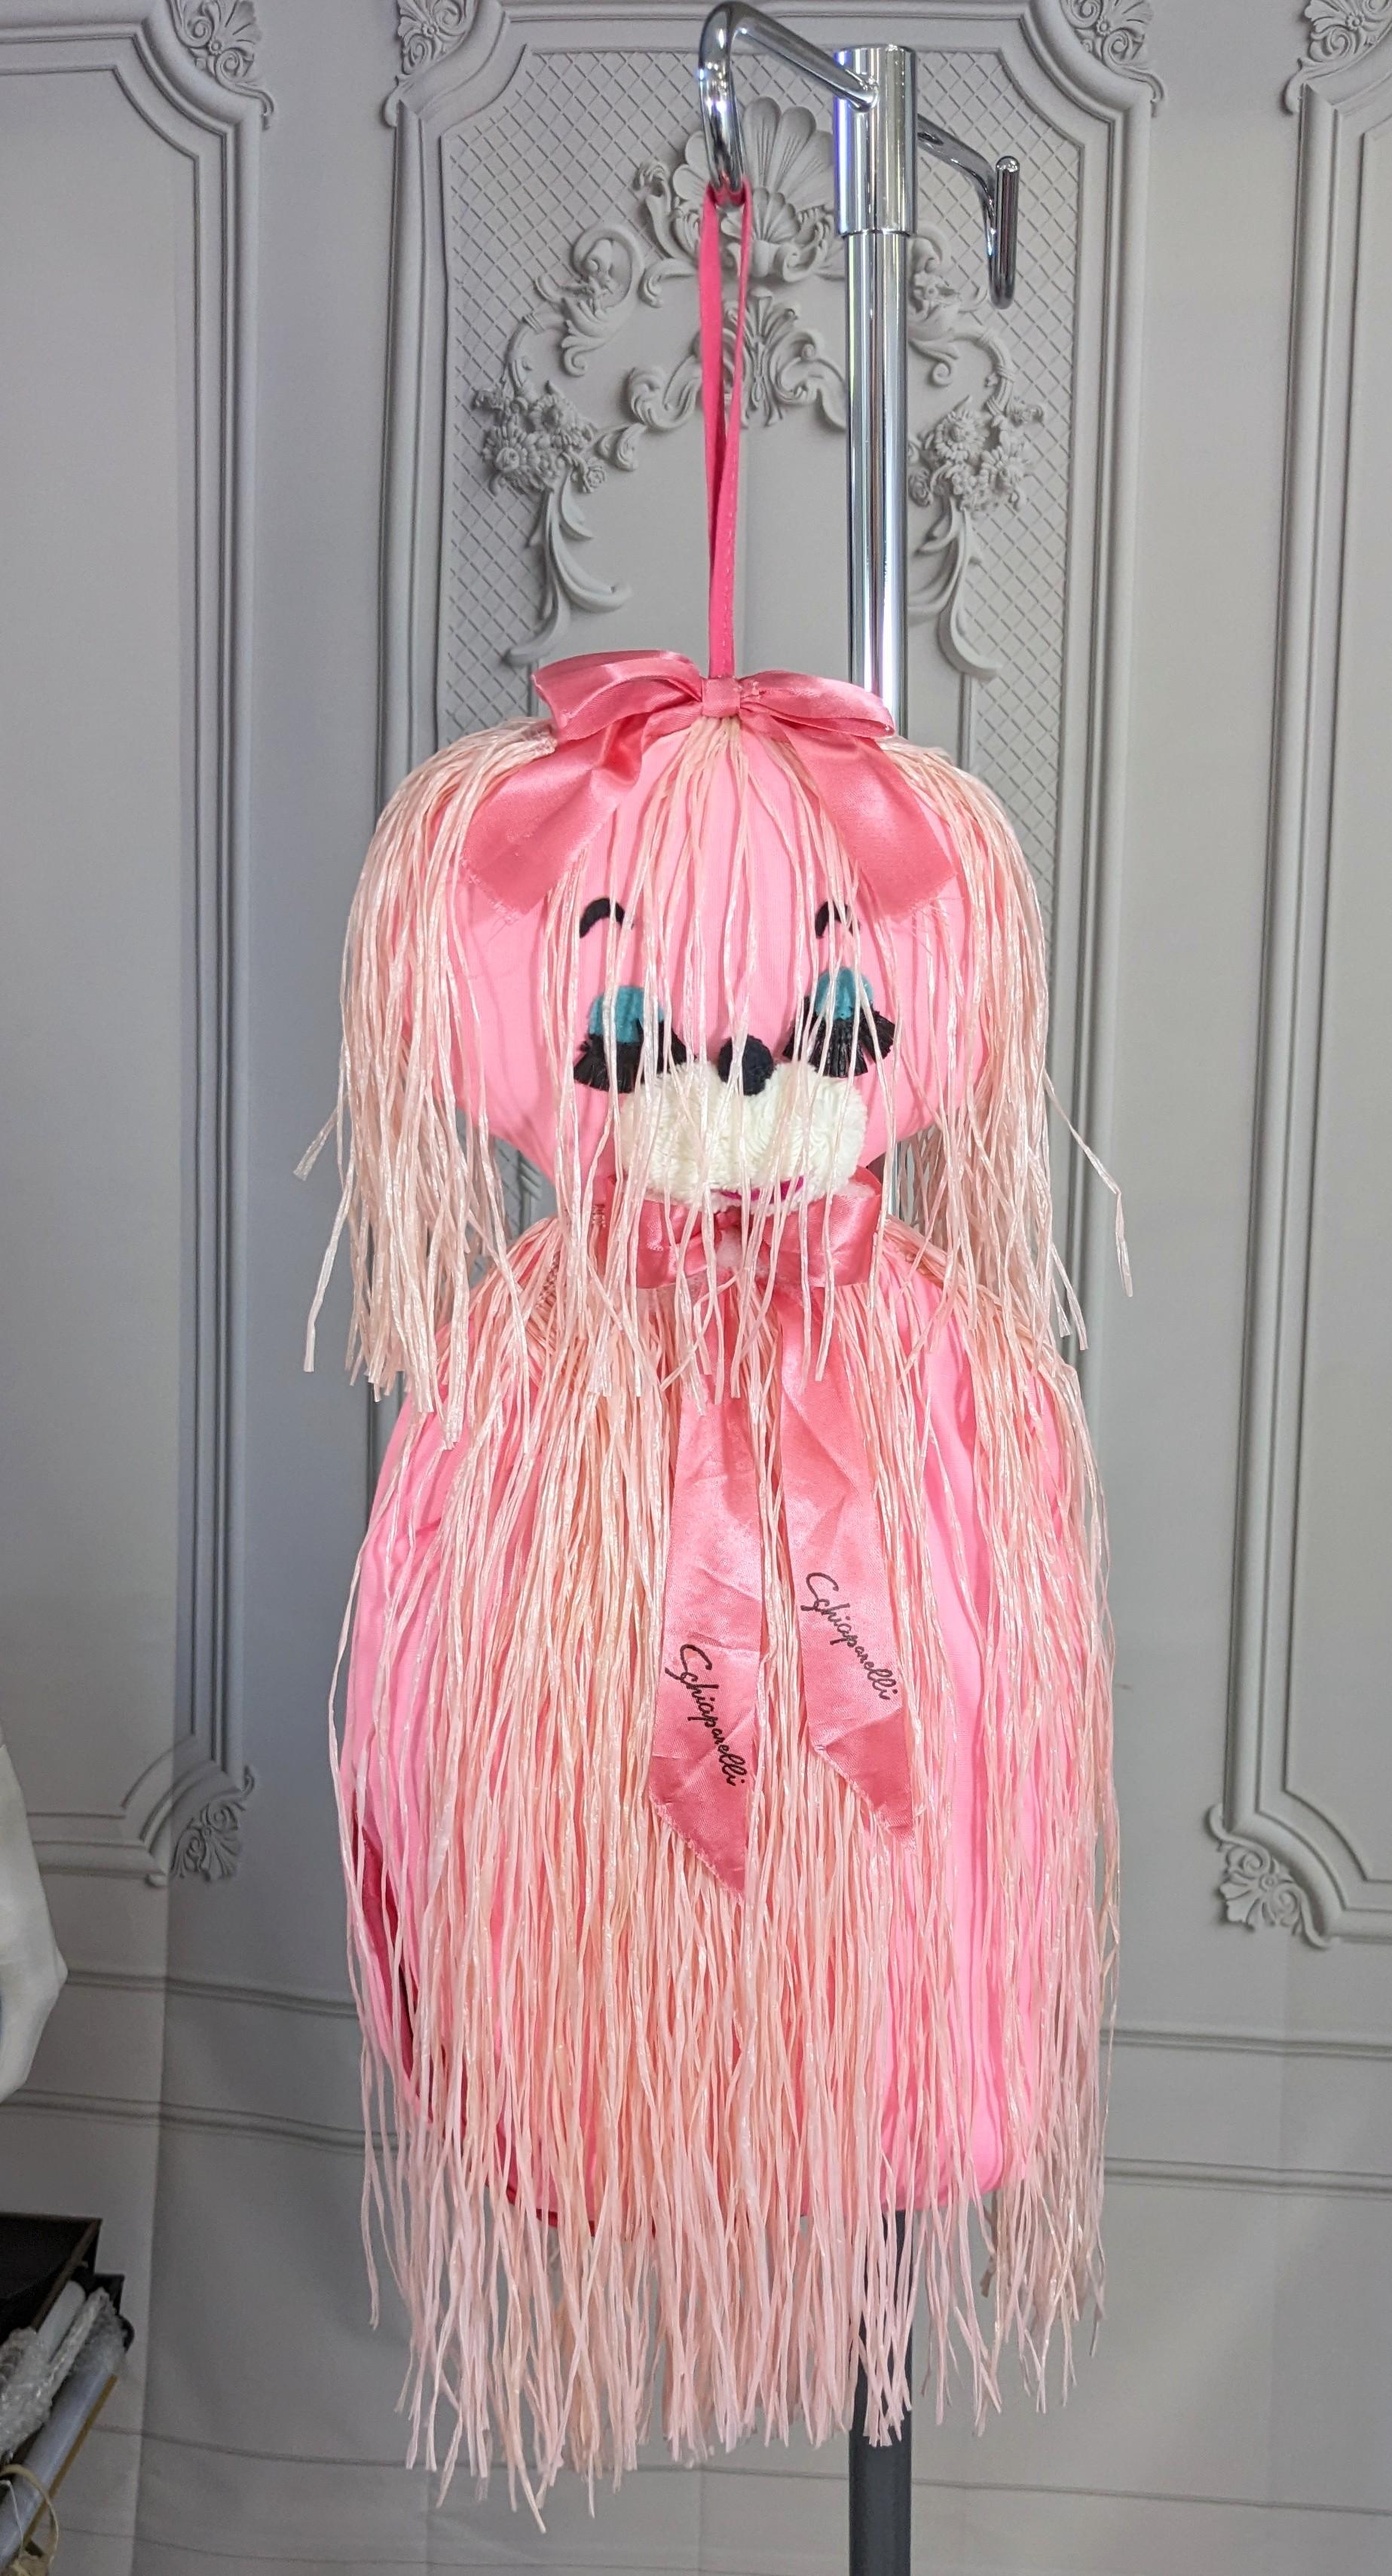 Rare and unusual figural Surrealist Elsa Schiaparelli lingerie bag. This amusing, rare Schiaparelli figural cat lingerie bag is made of bright pink acetate, with 